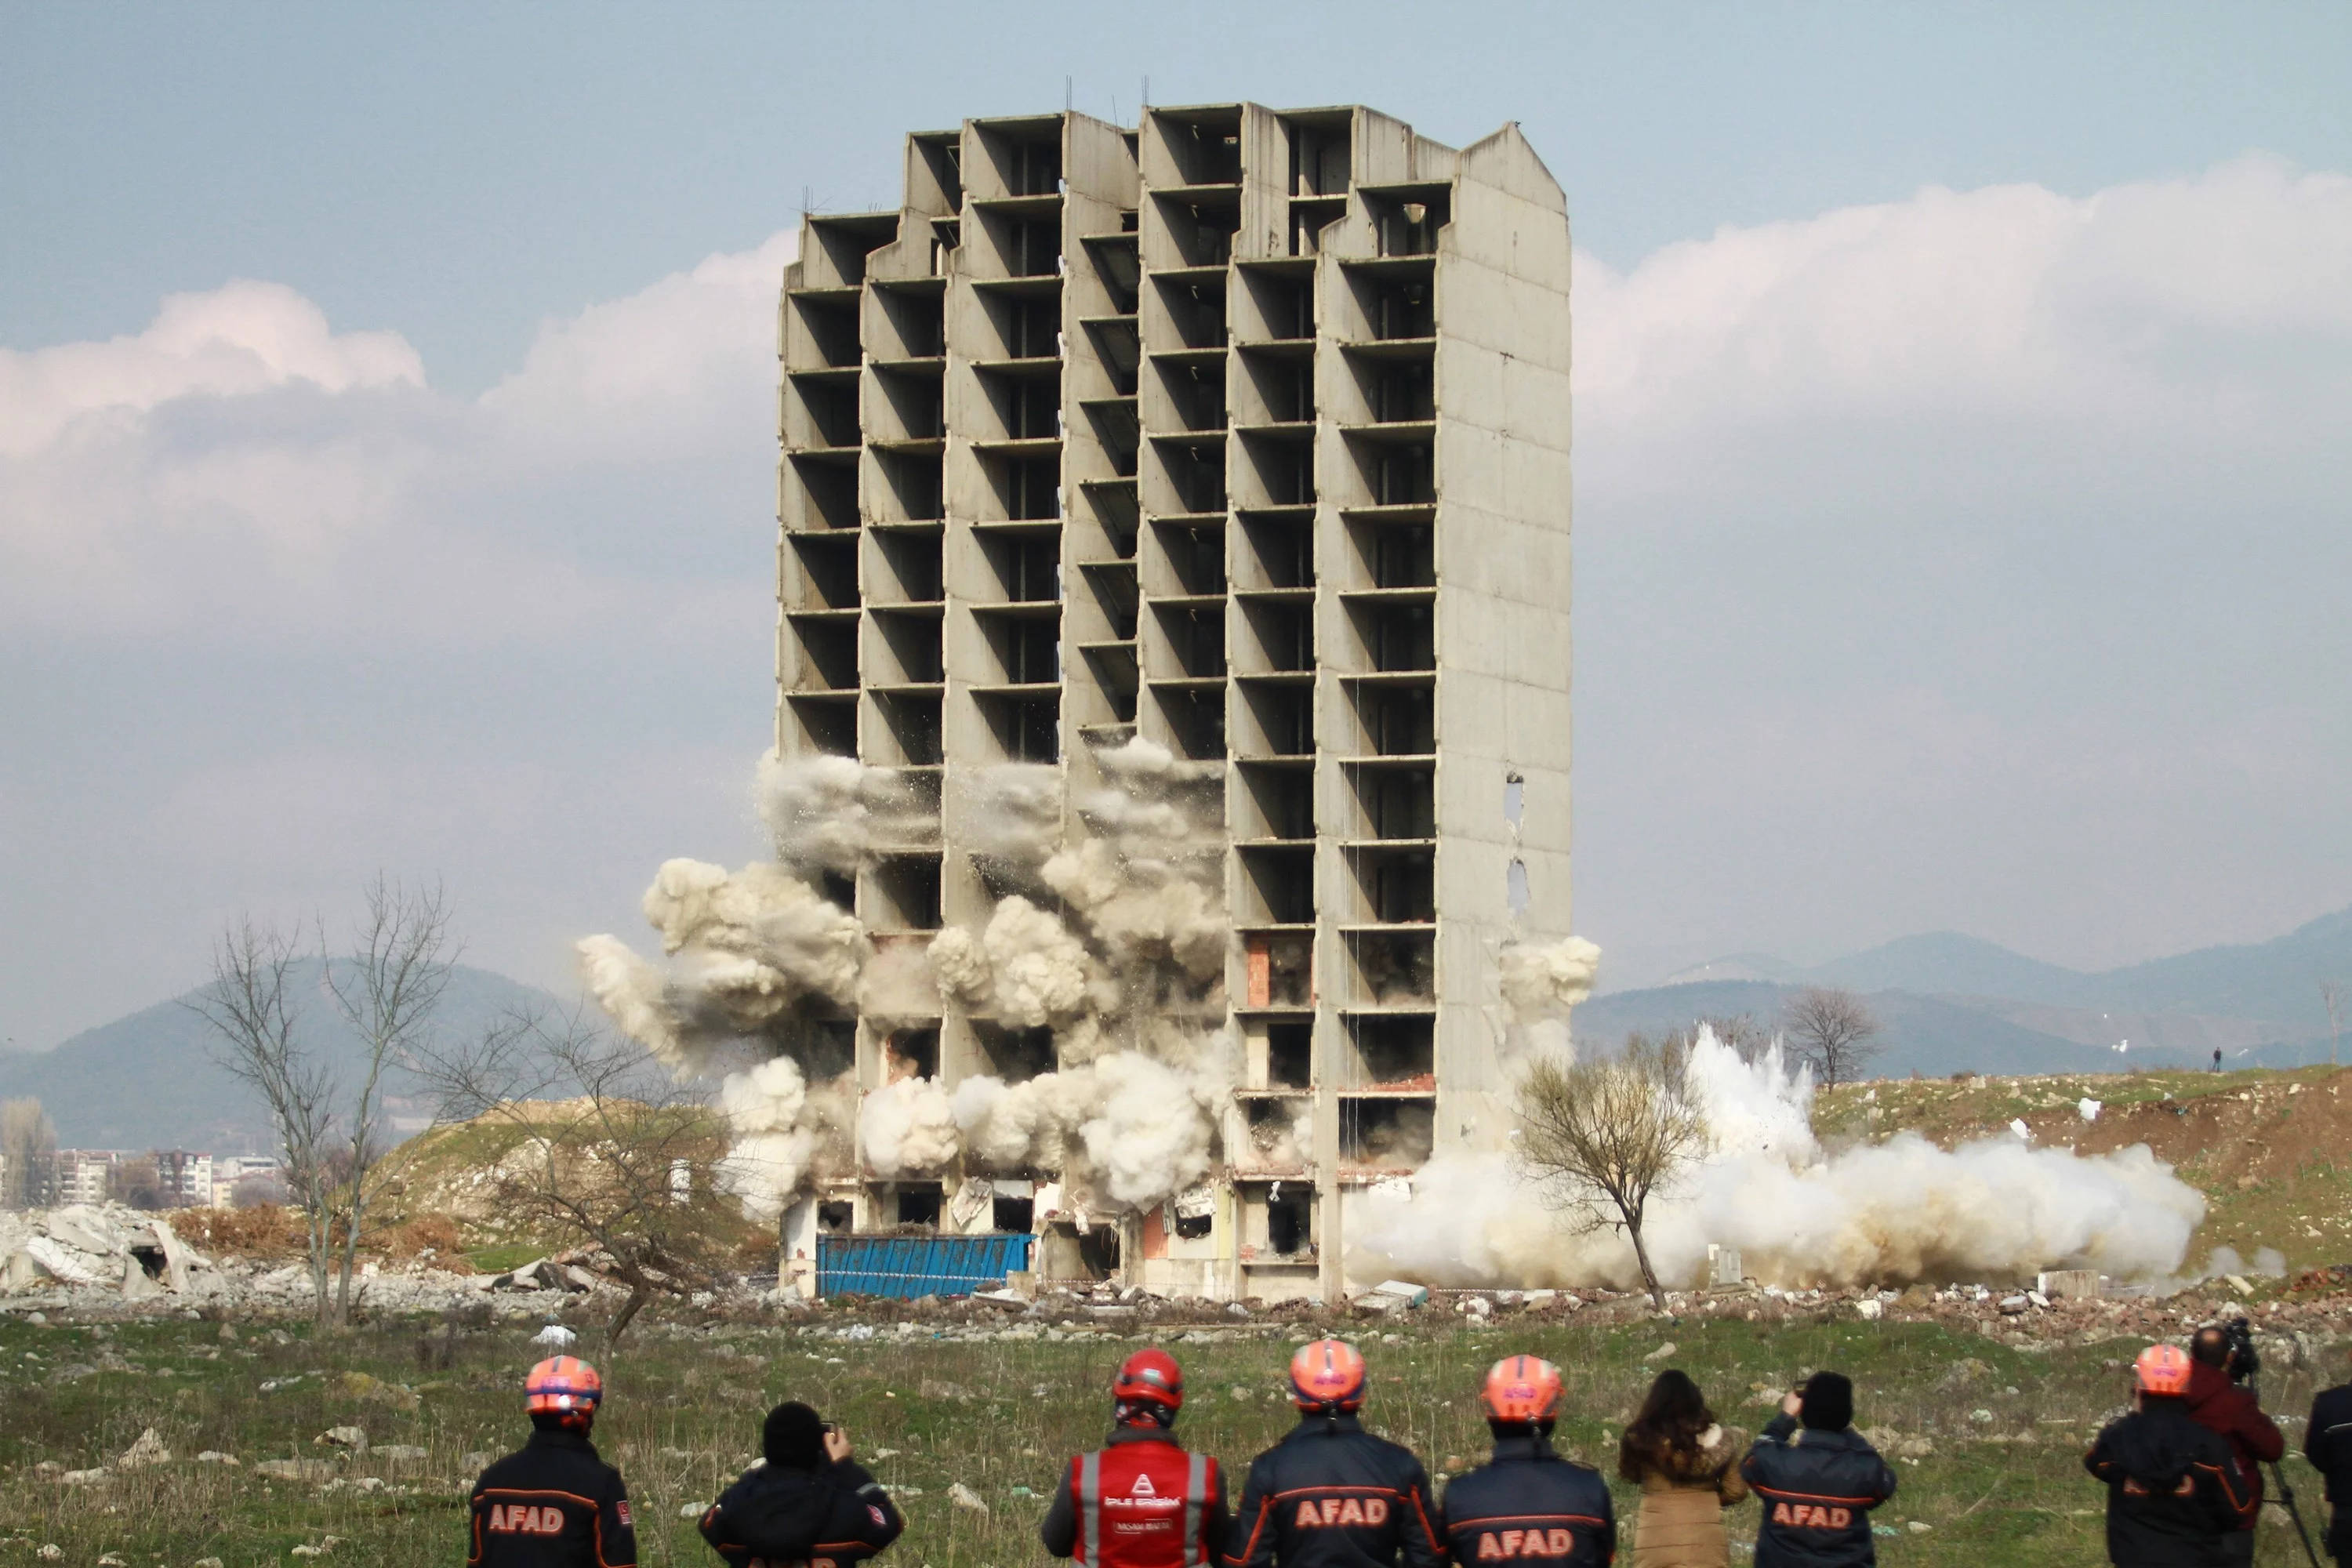 300 kilo dinamitle yıkılmayan 13 katlı binanın kendiliğinden çökme anı kamerada